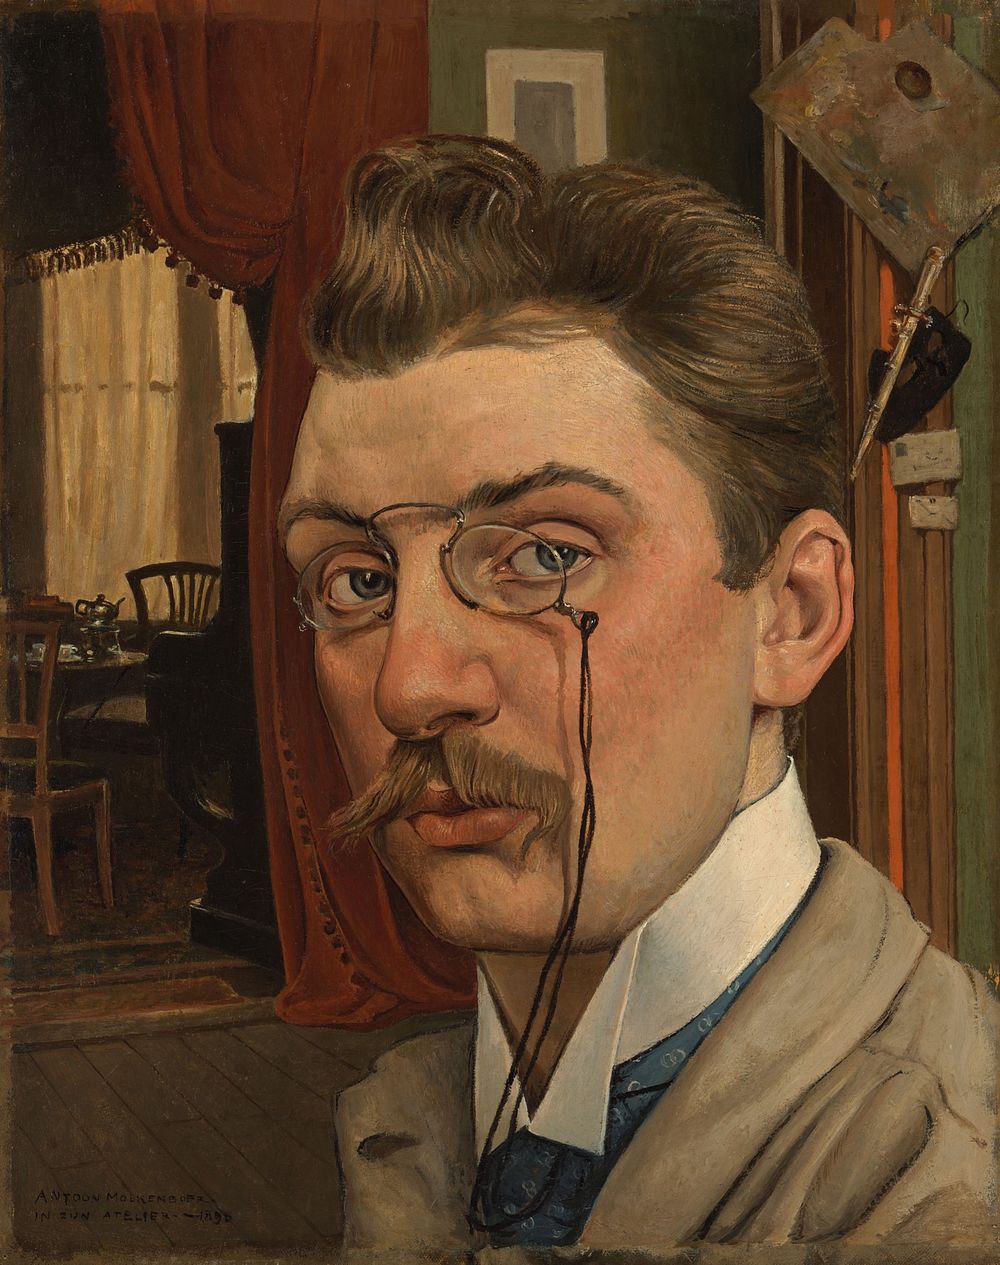 Zelfportret in het atelier (1896) by Anton Molkenboer